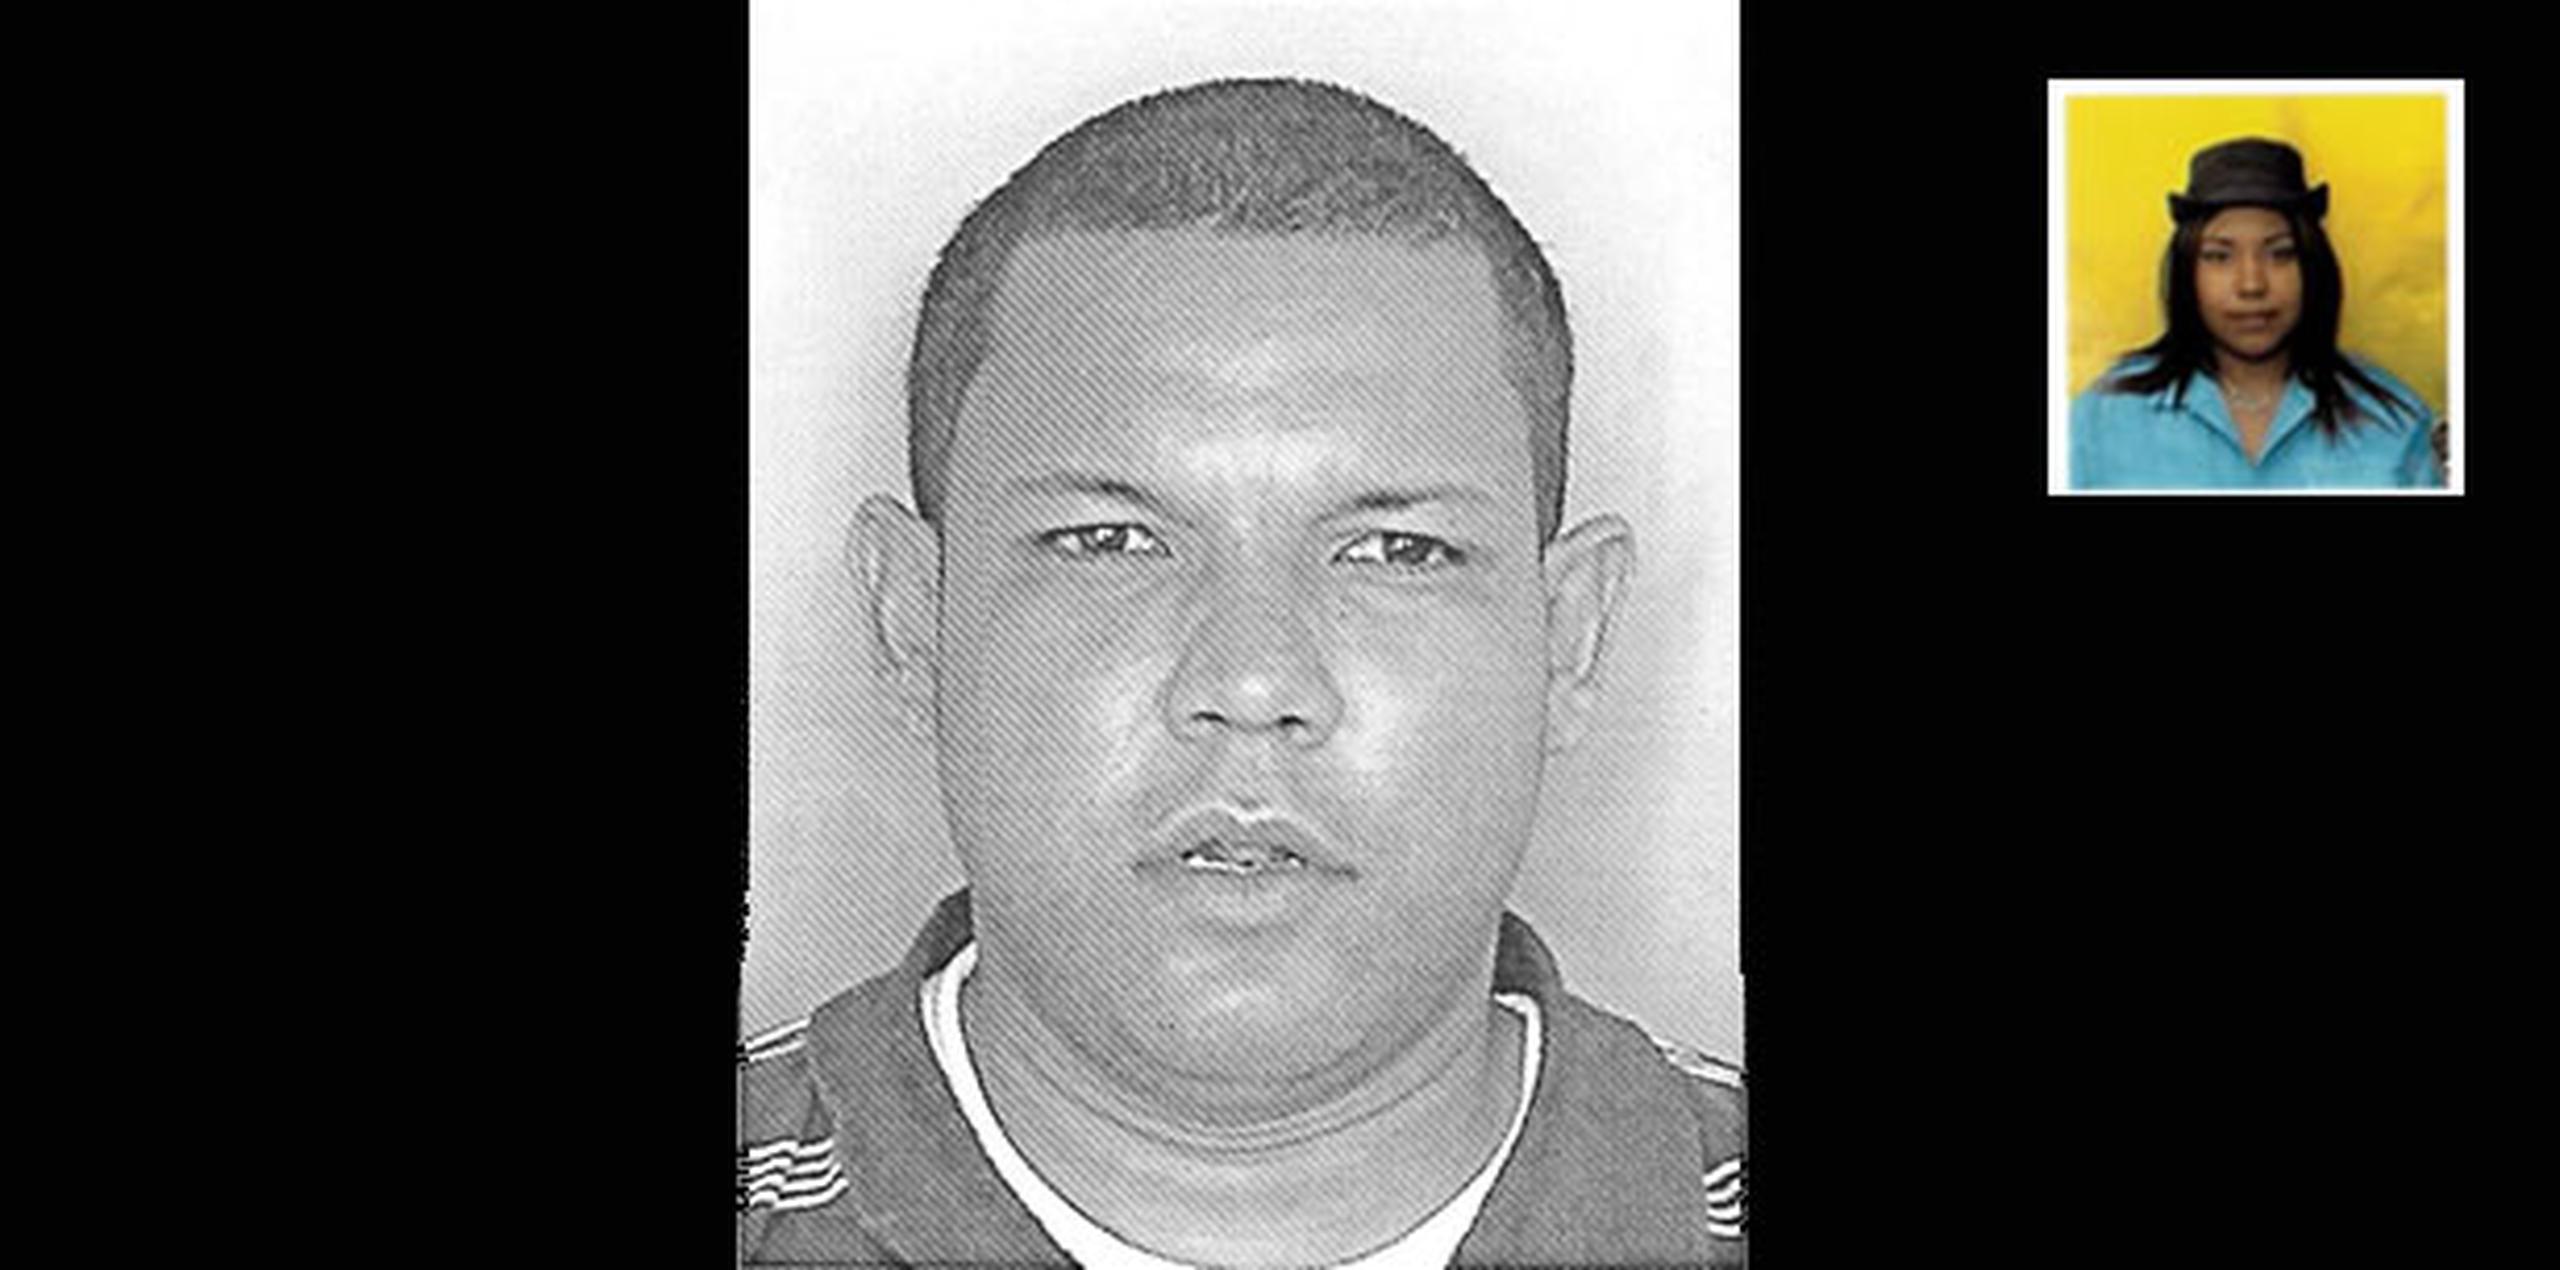 La Policía adelantó hoy que el agresor, José L. Rodríguez Rivera, quien se suicidó tras asesinar a su pareja, tenía un historial de violencia contra mujeres al estar fichado por casos de violencia doméstica en 2009 y 2013. (Suministrada)
